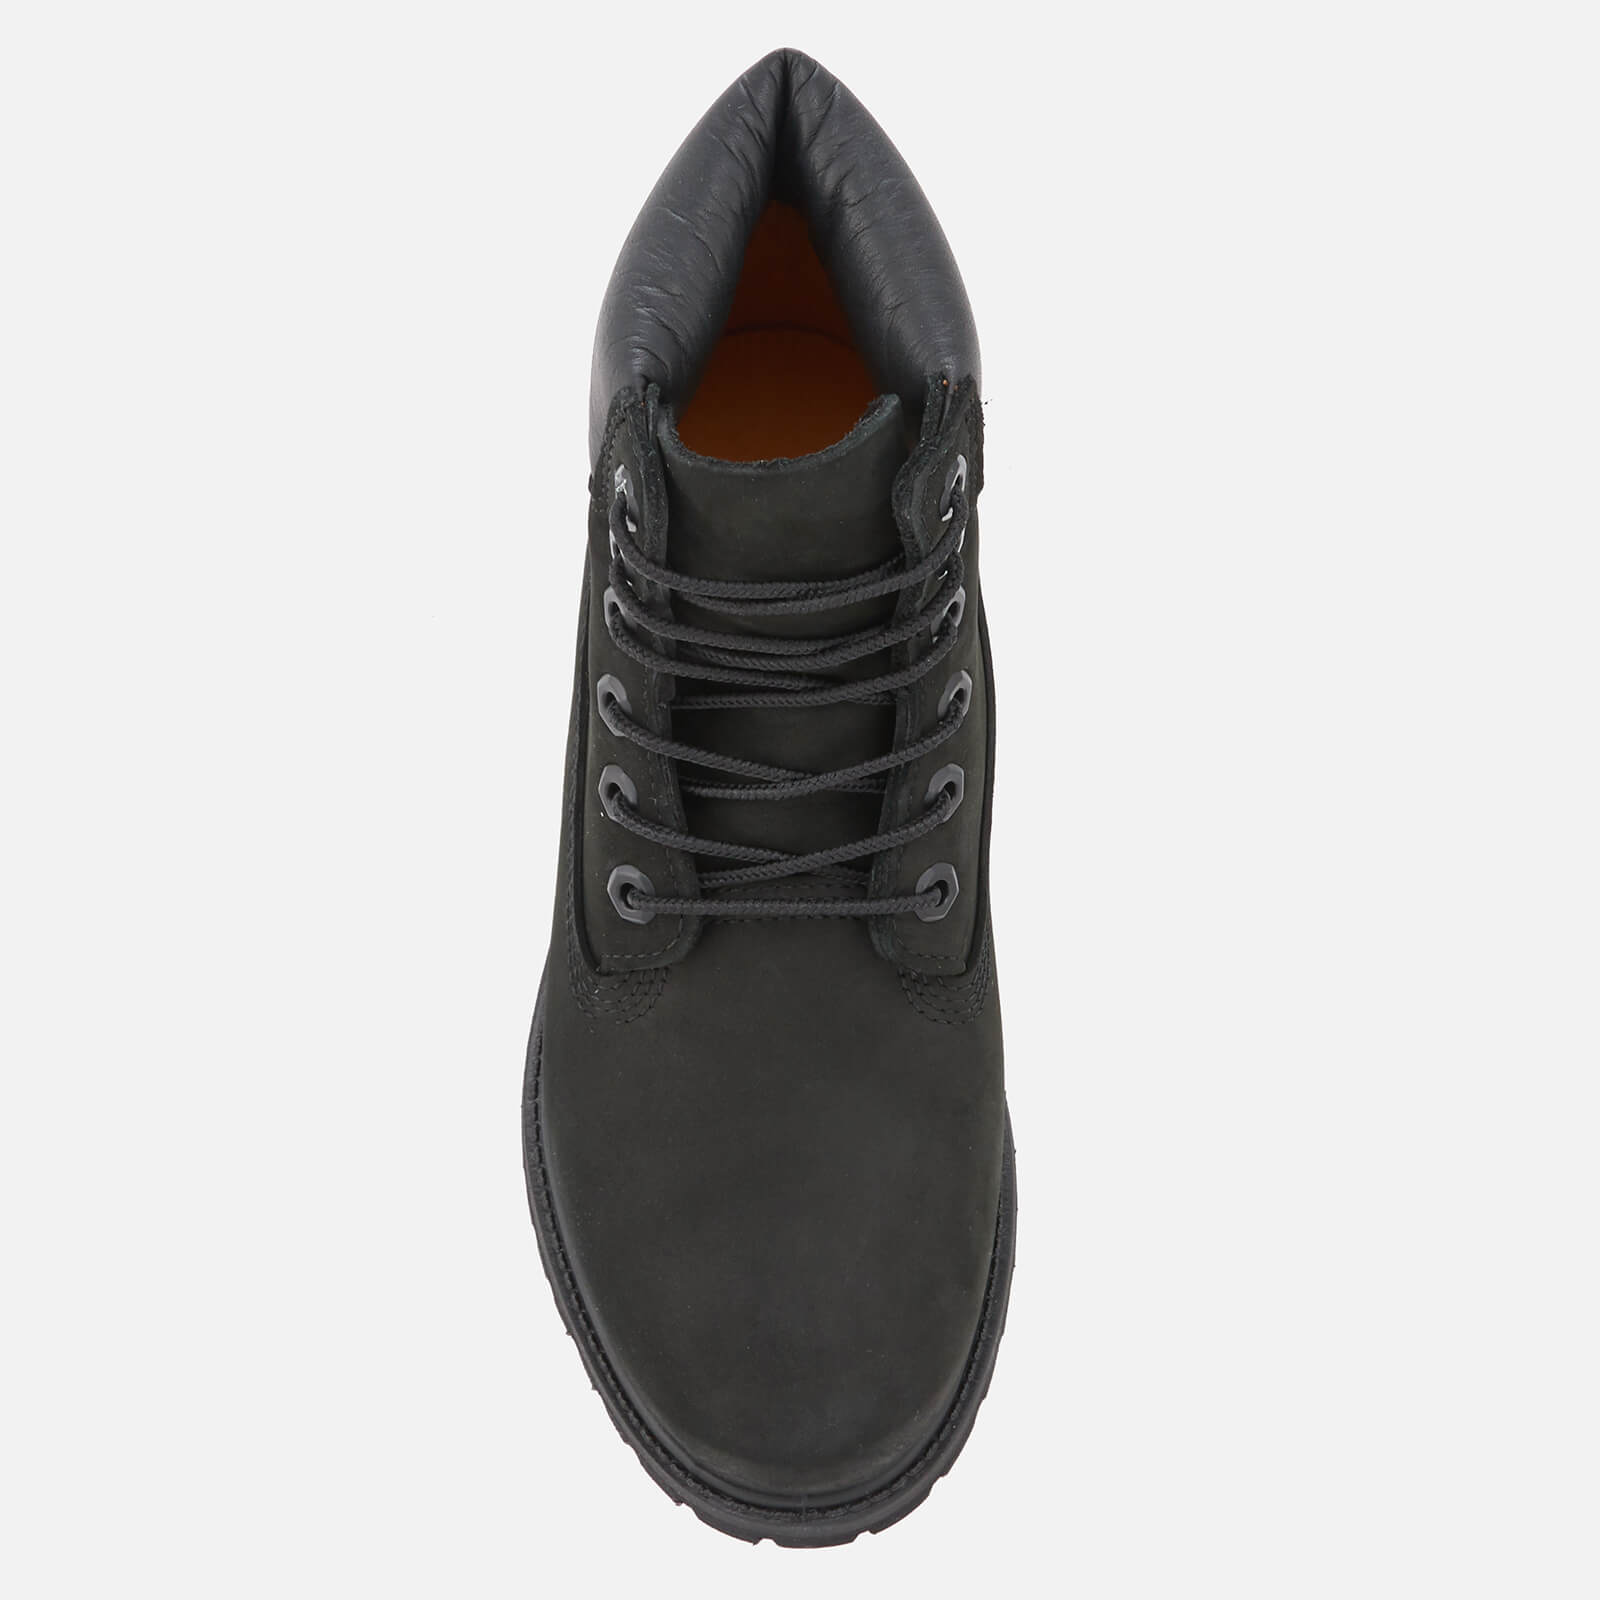 Timberland Women's 6 Inch Nubuck Premium Boots - Black - Uk 4